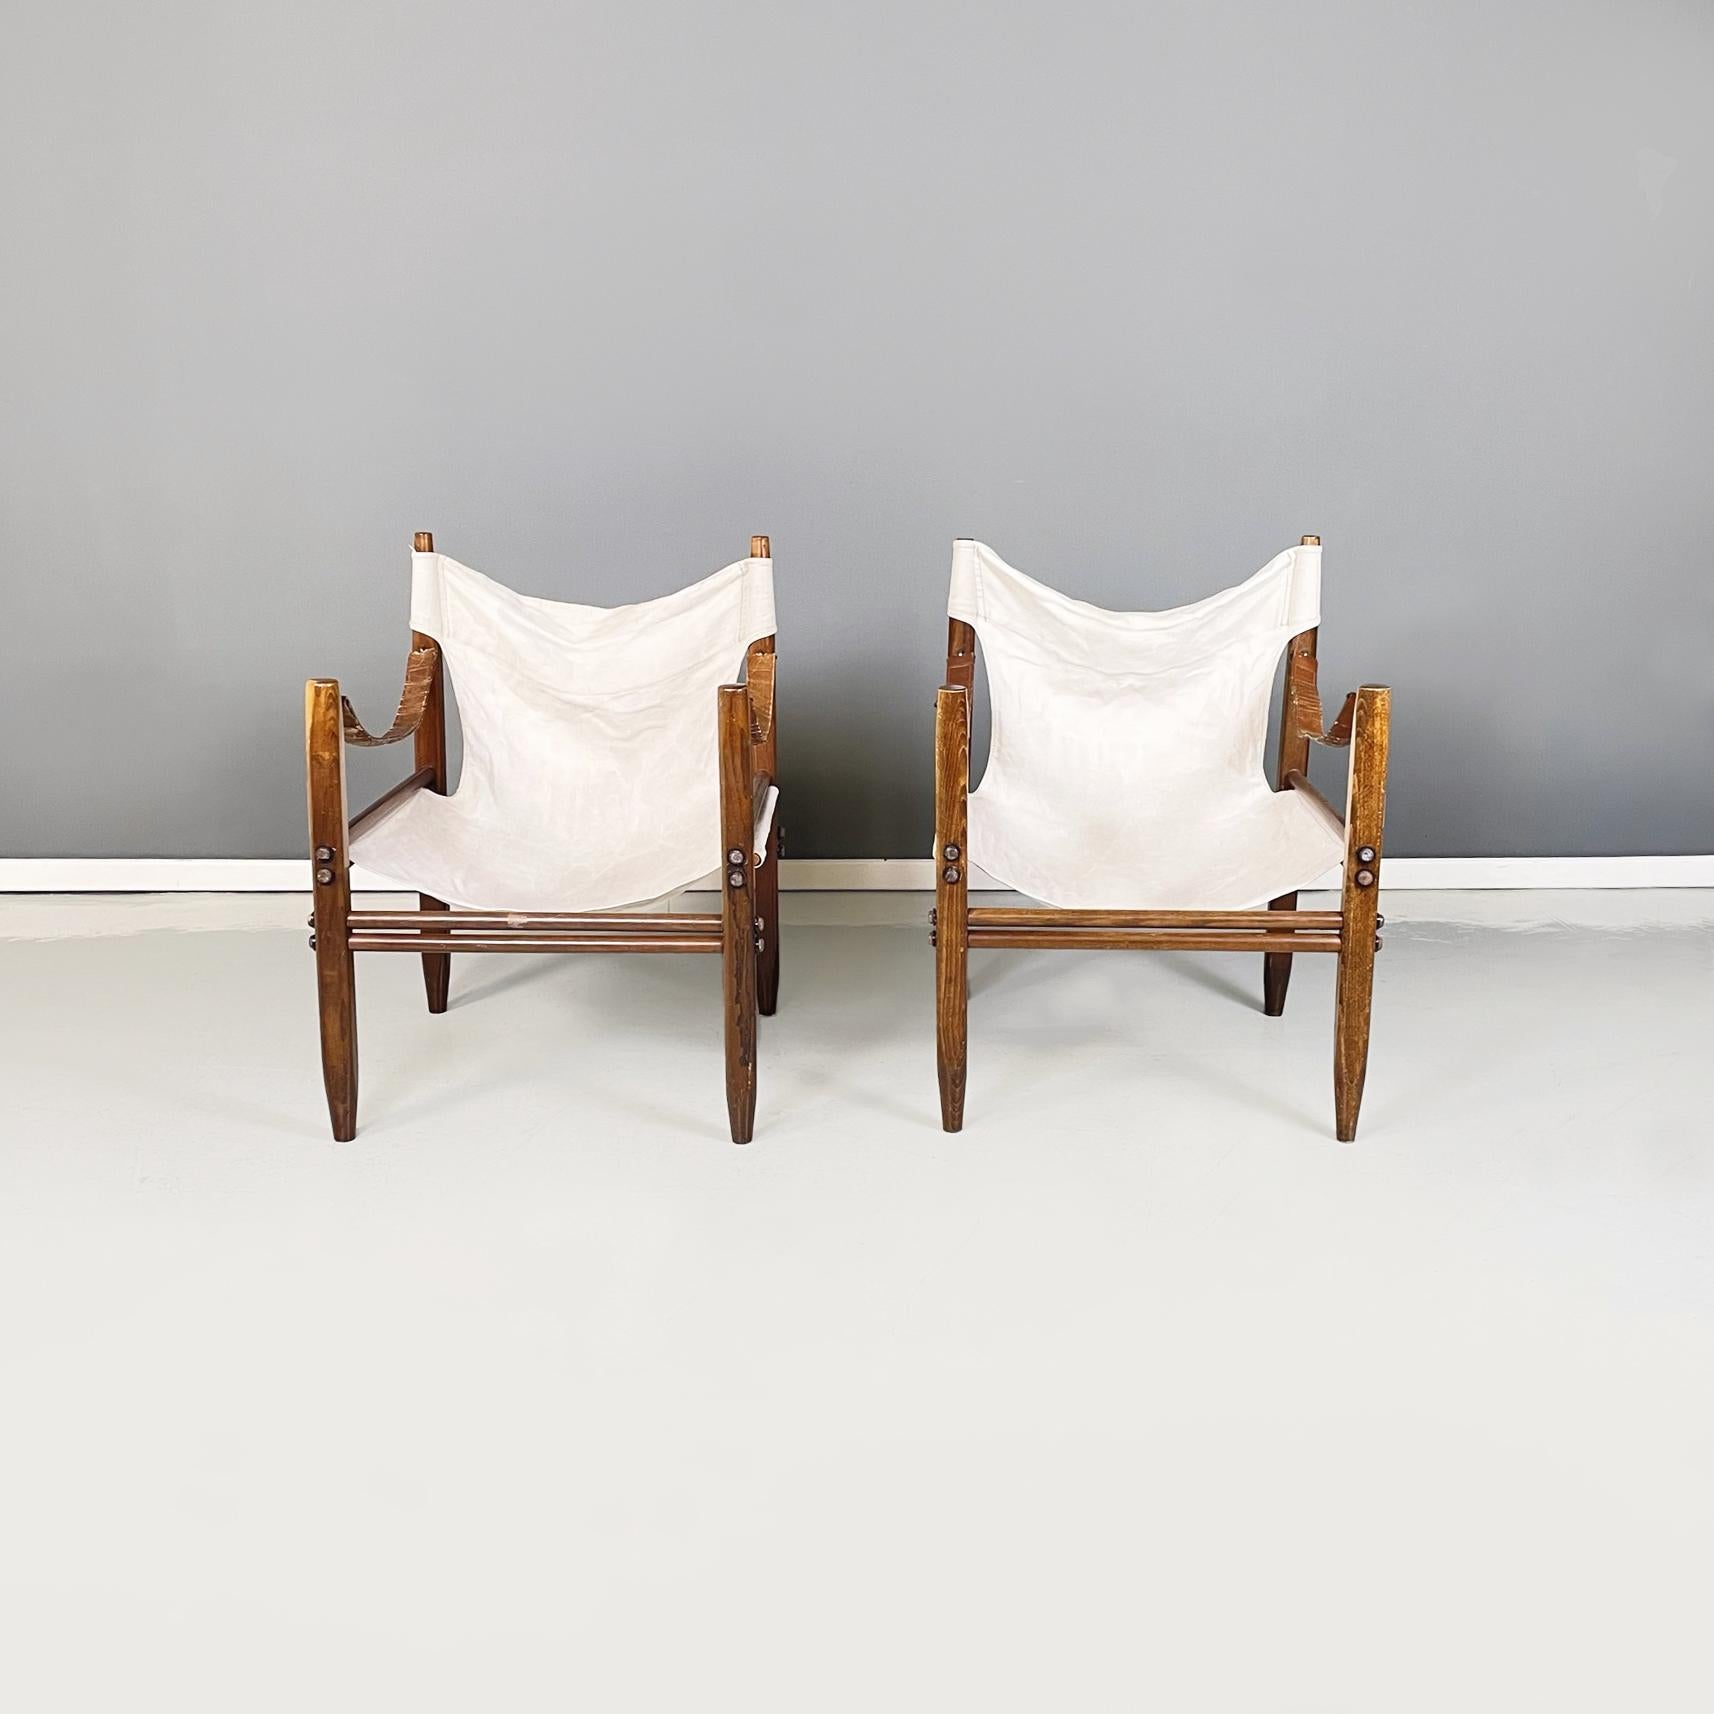 Italienische Sessel aus der Mitte des Jahrhunderts Oasi 85 von Gian Franco Legler für Zanotta, 1960er Jahre
Paar Sessel mod. Oasi 85, auch bekannt als Safari, in beige Stoff und Holz. Sitz und Rückenlehne bestehen aus einem einzigen Stoff, der an